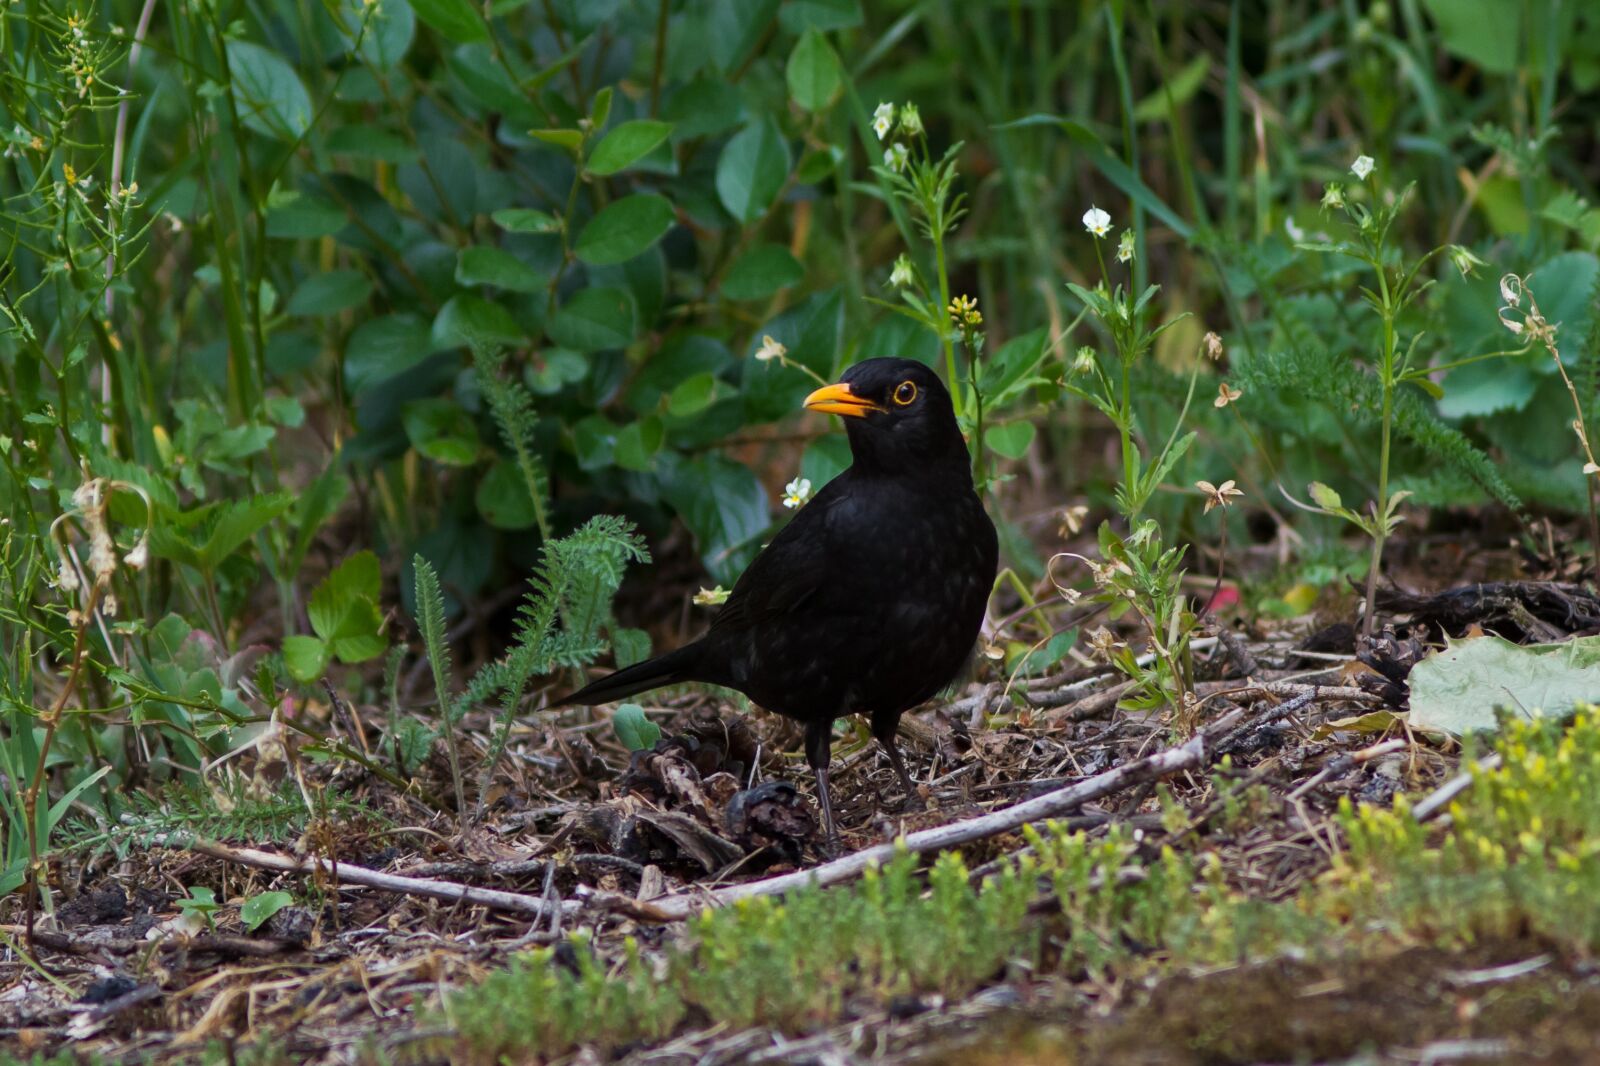 Canon EOS 7D sample photo. Blackbird, summer, bird photography